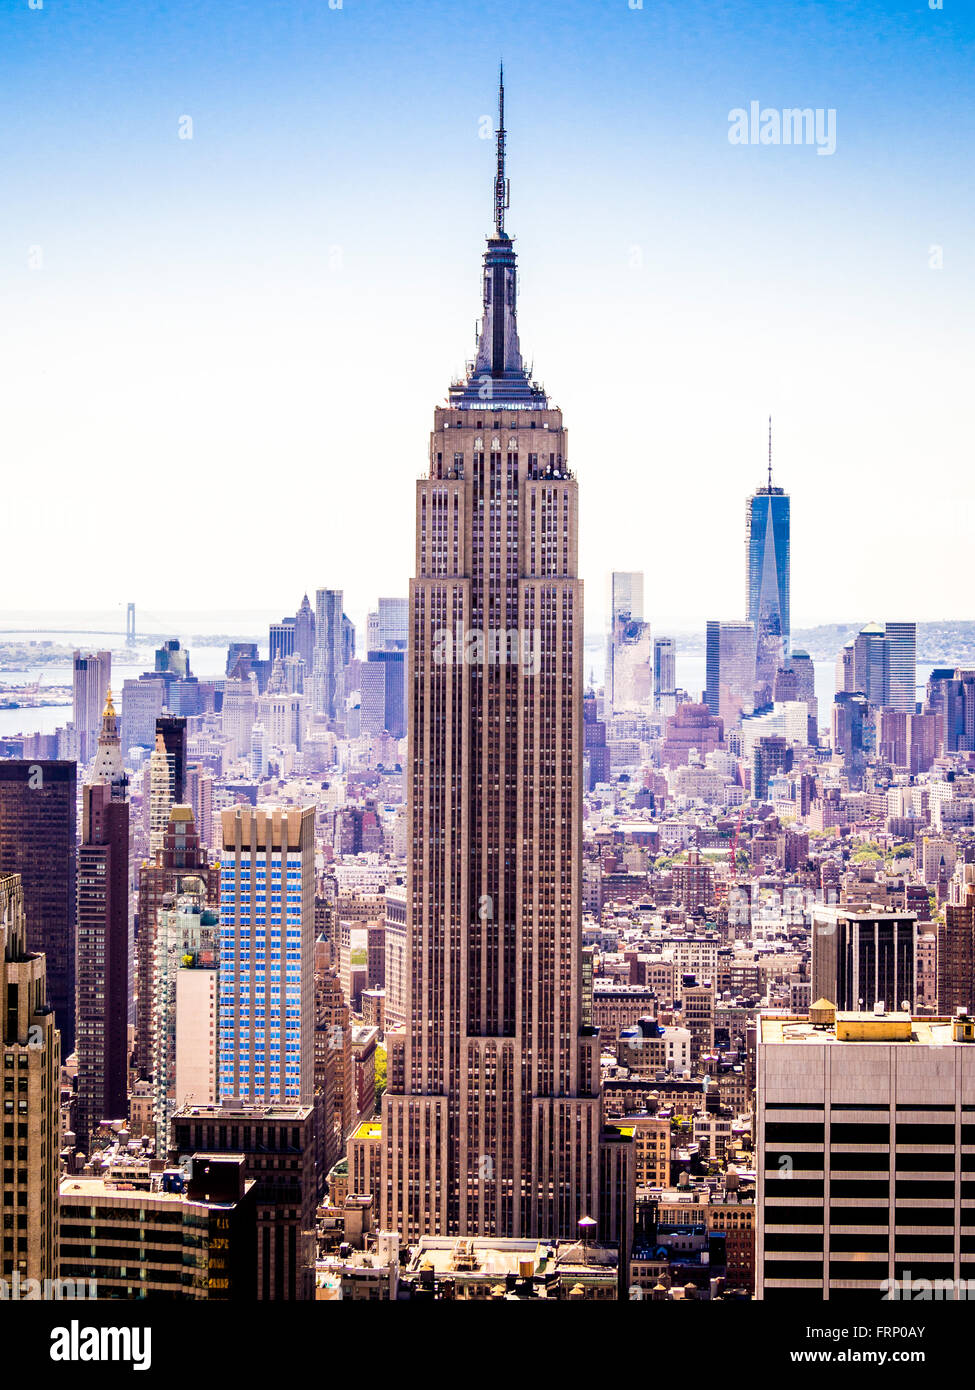 El Empire State Building, Nueva York, EE.UU., vistos desde la plataforma de observación del Rockefeller Center (parte superior de la roca). Foto de stock